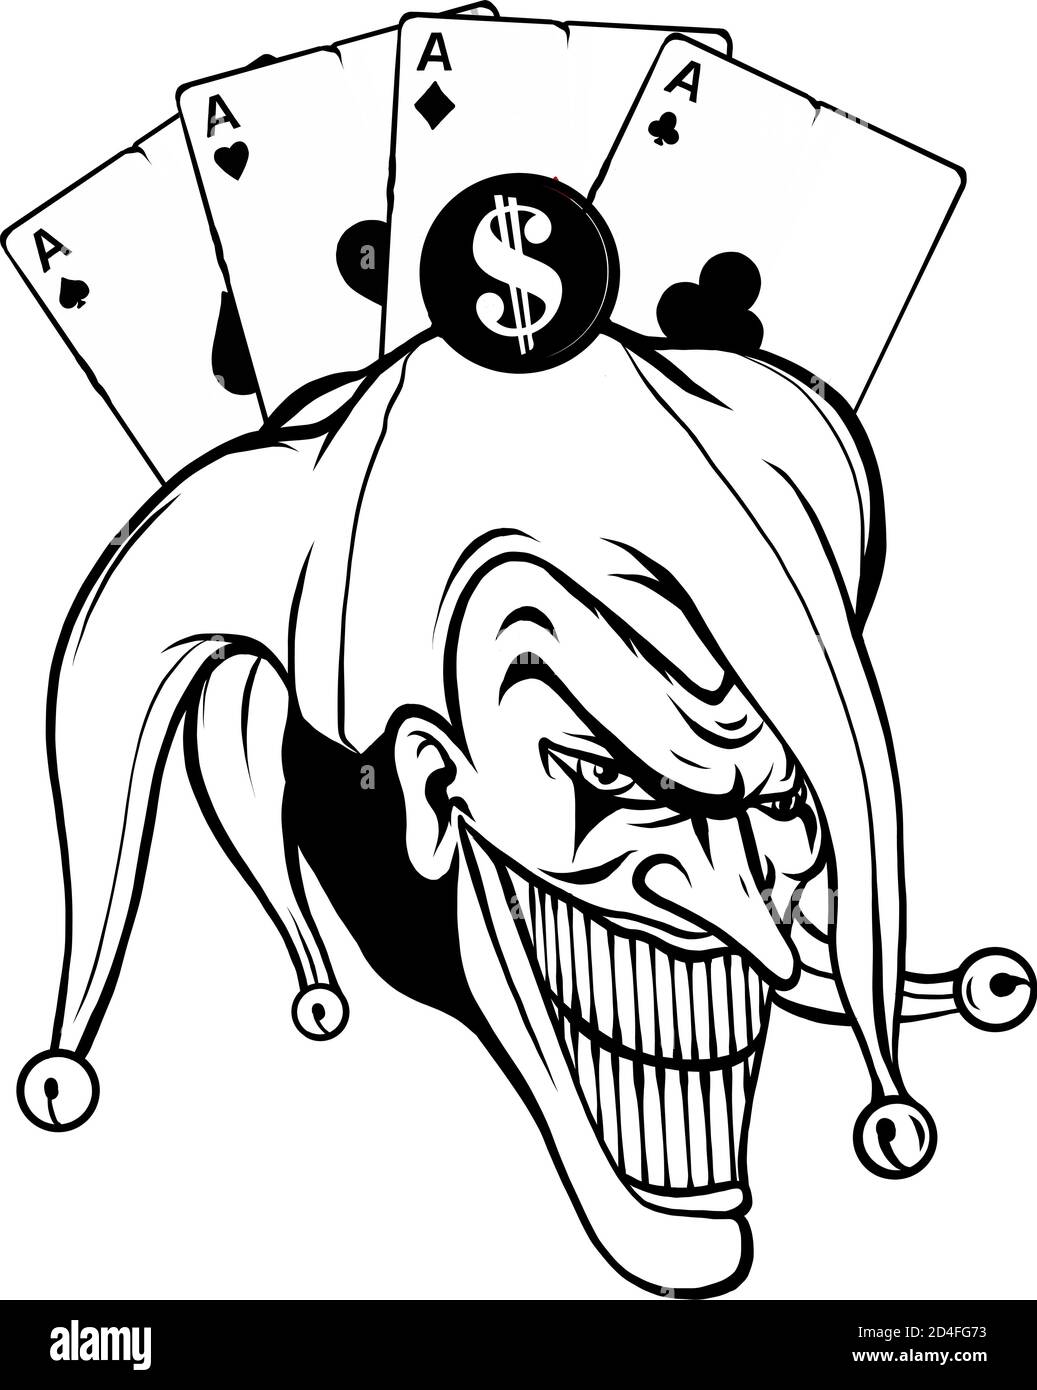 Illustration de la fantaisie vectorielle d'un vampire zombie joker portant un chapeau clown Illustration de Vecteur